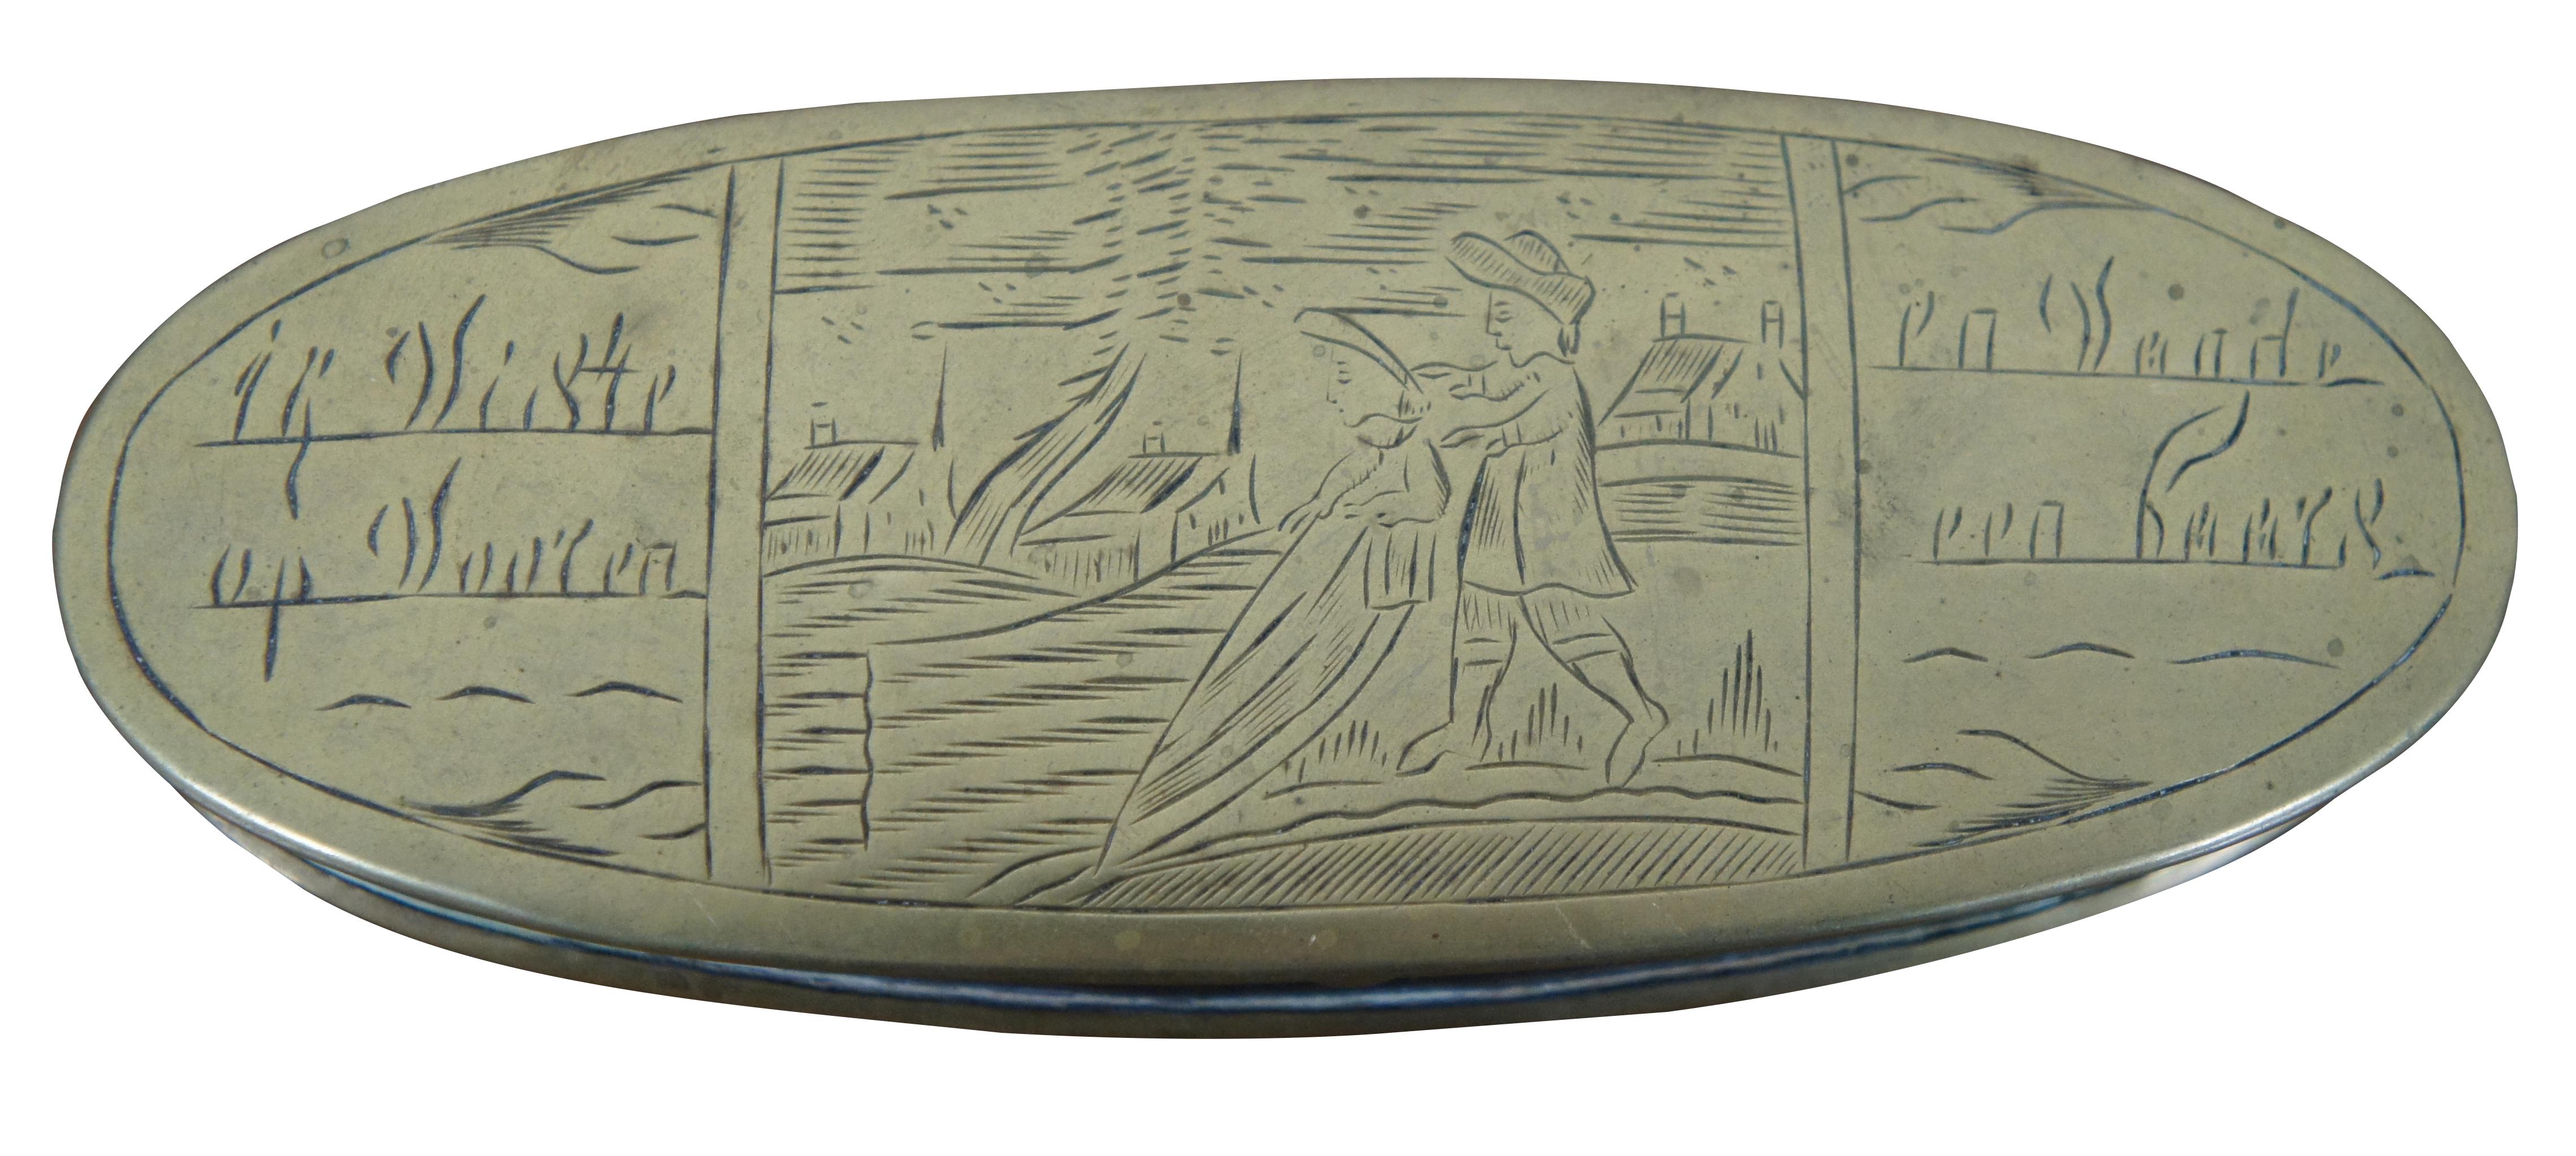 Antike ovale holländische Zunder- / Schnupftabak- / Pillendose aus Messing des späten 18. Jahrhunderts, geätzt mit Sprüchen und einer Landschaft mit zwei Figuren, die ein Feld pflügen.

Voor ene goede vrind / für einen guten Freund \[von mine\]
daar